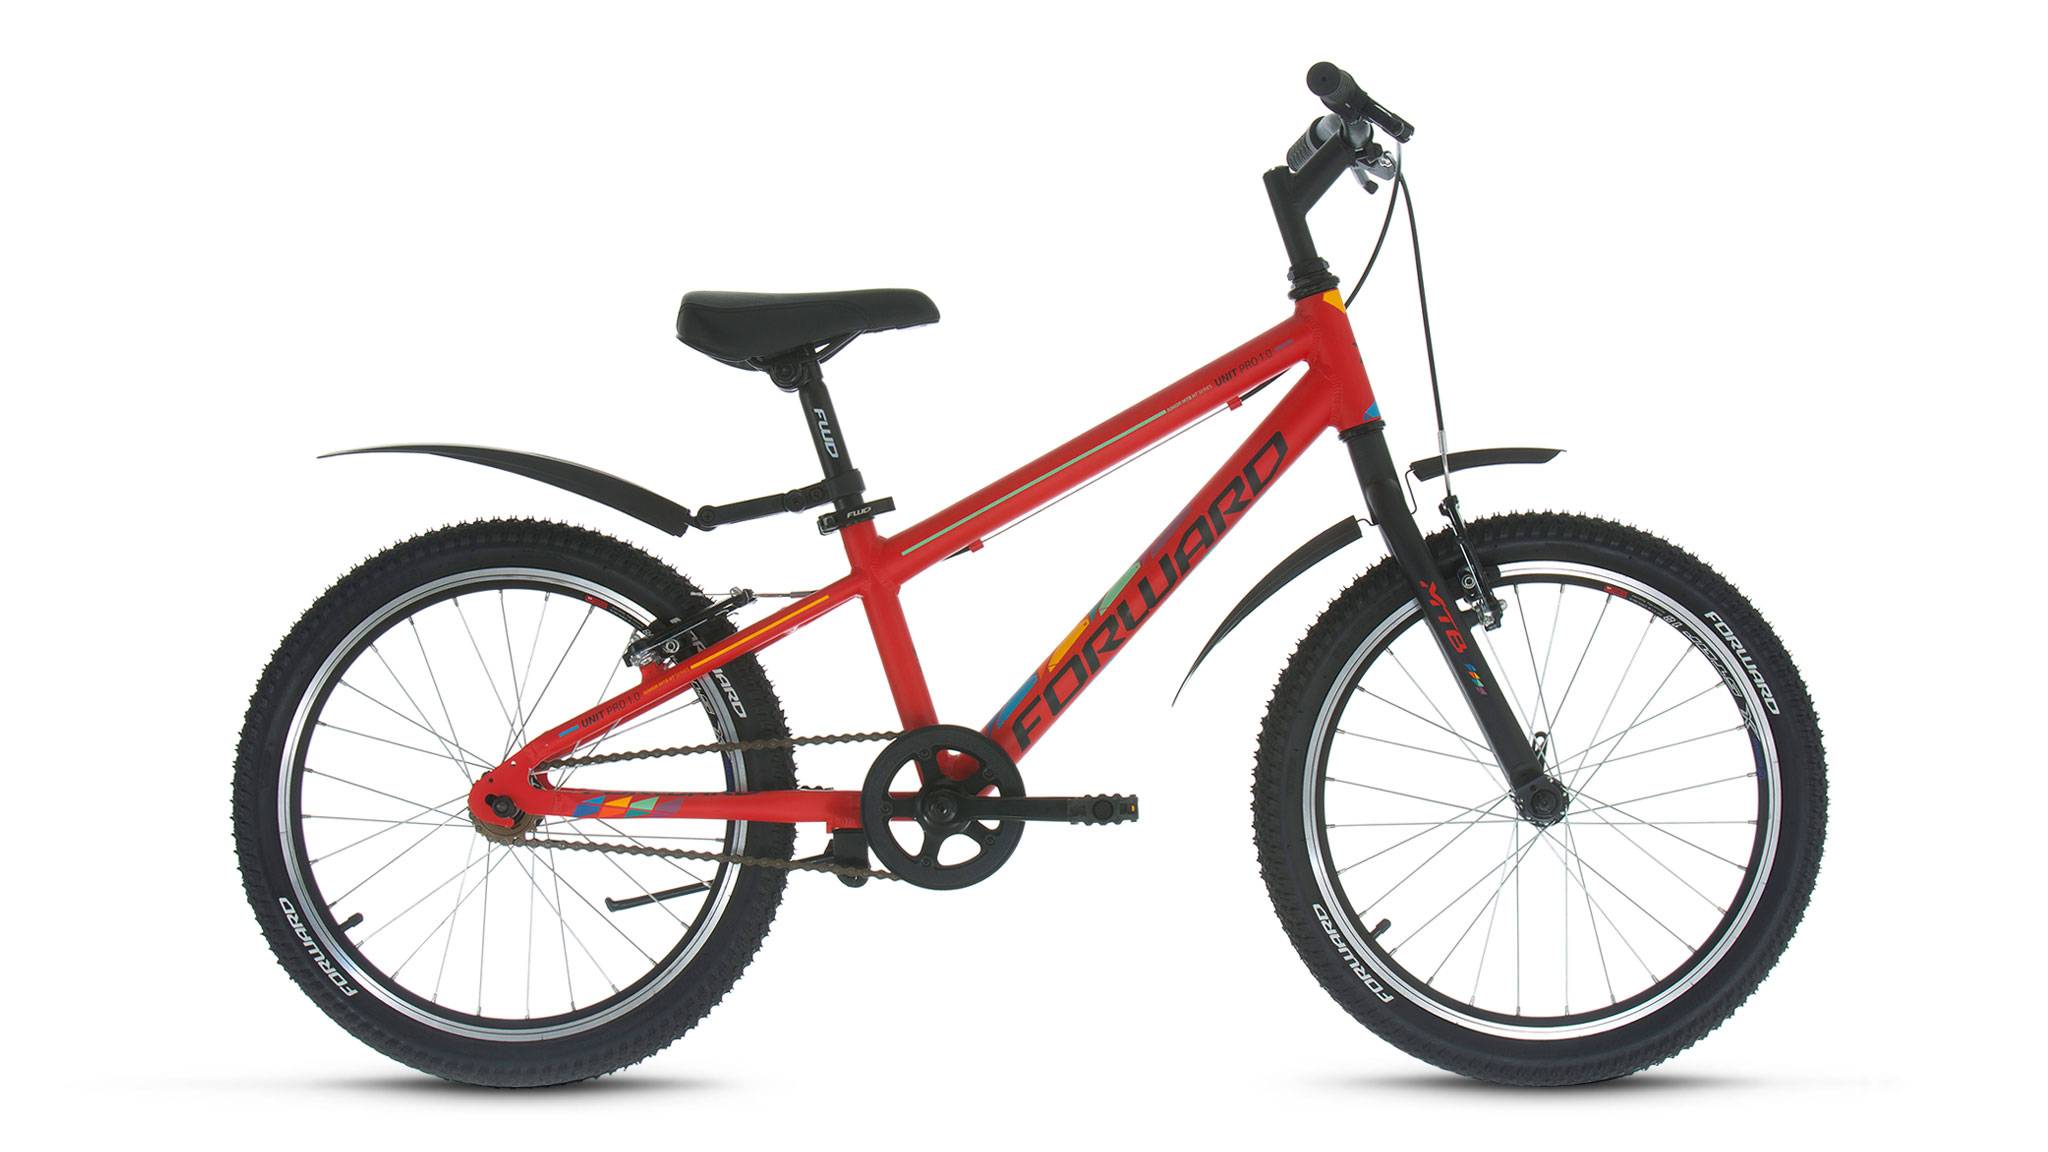 Купить велик горный. Велосипед Altair MTB HT 20. Подростковый горный (MTB) велосипед Altair MTB HT 20 1.0 (2018). Forward Unit 20 1.0. Велосипед Альтаир 20 МТВ НТ 1 0.